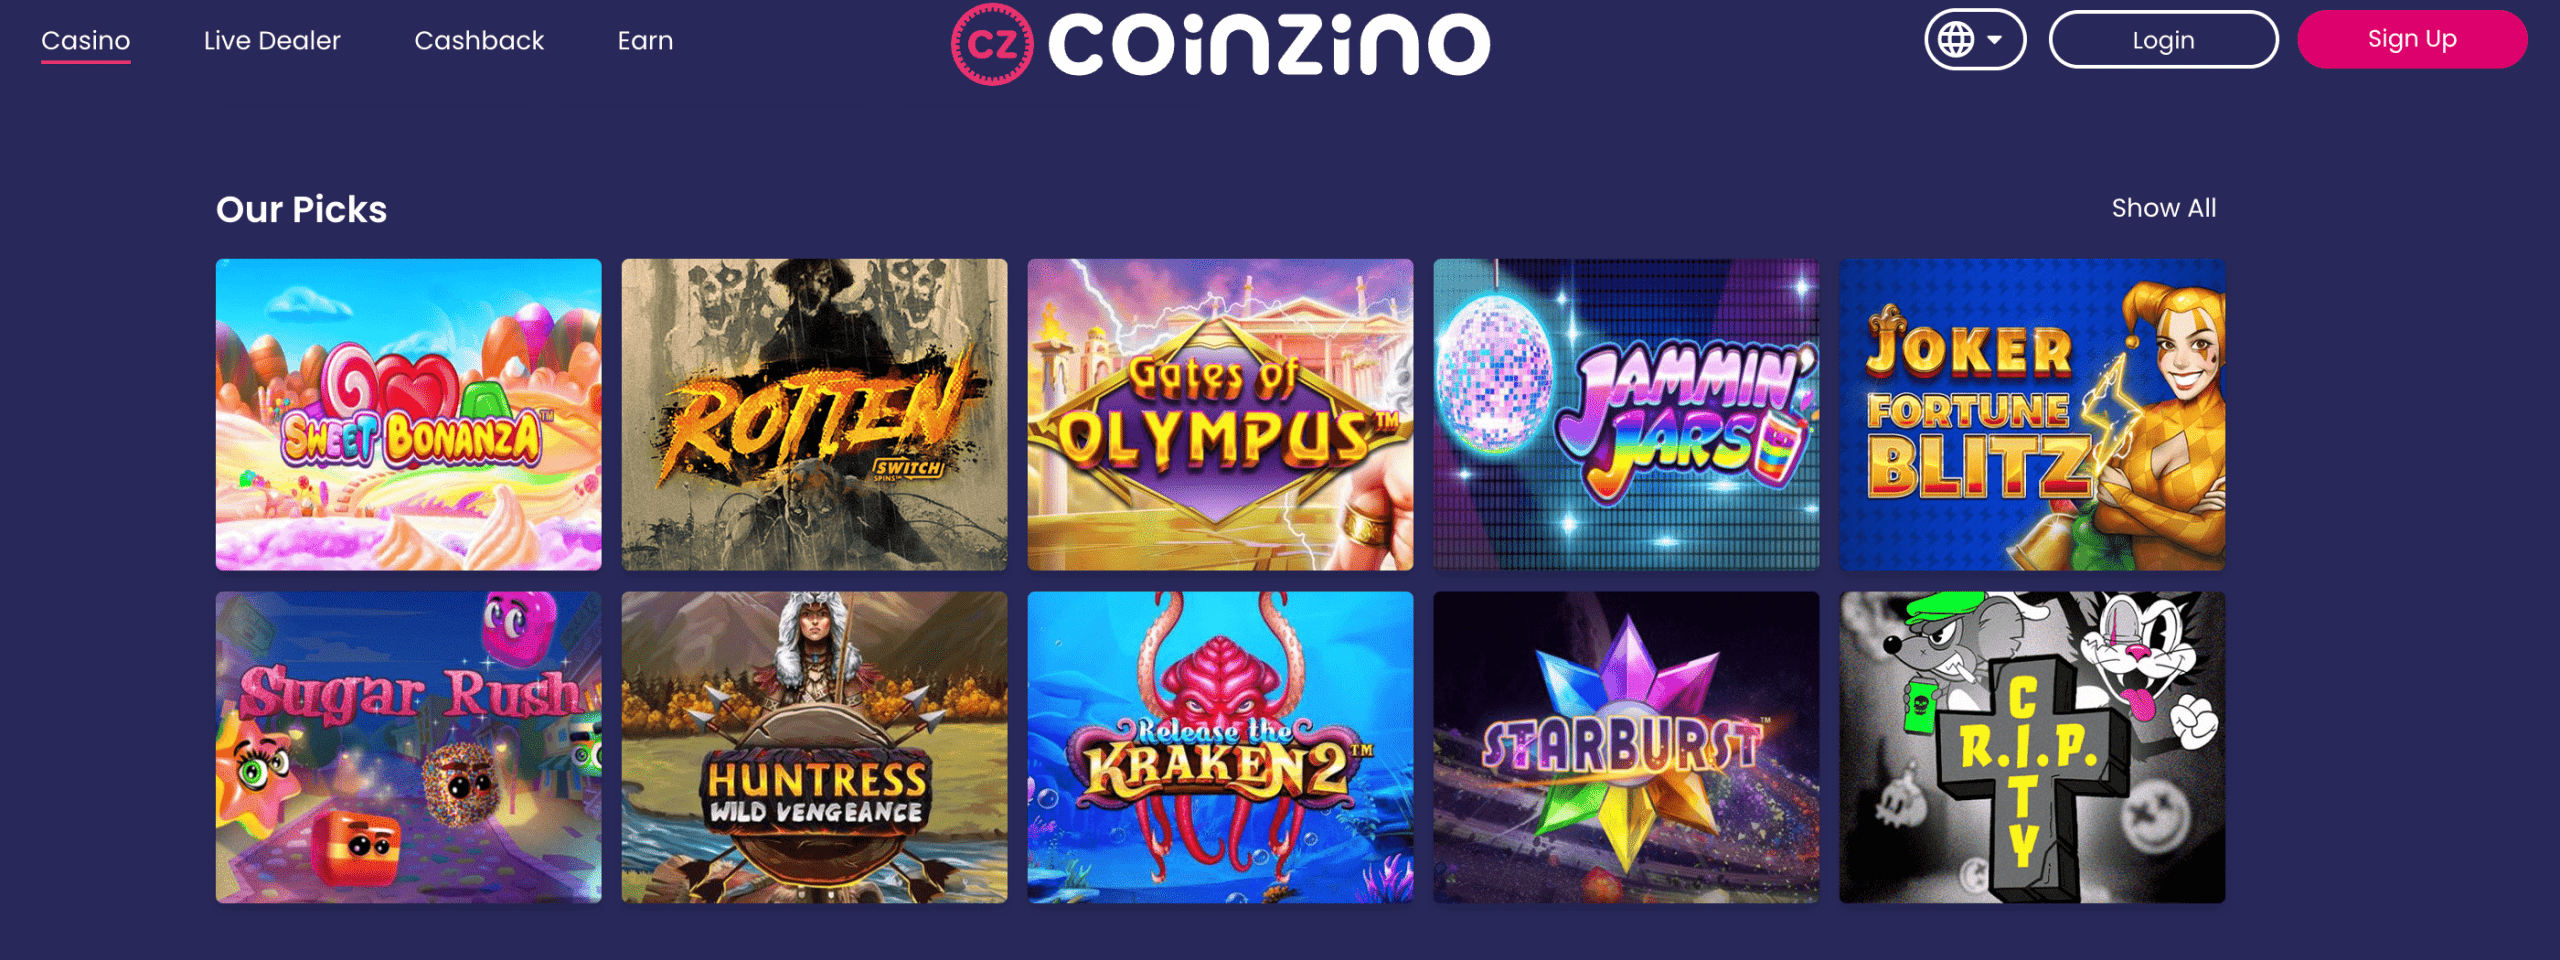 Coinzino Games